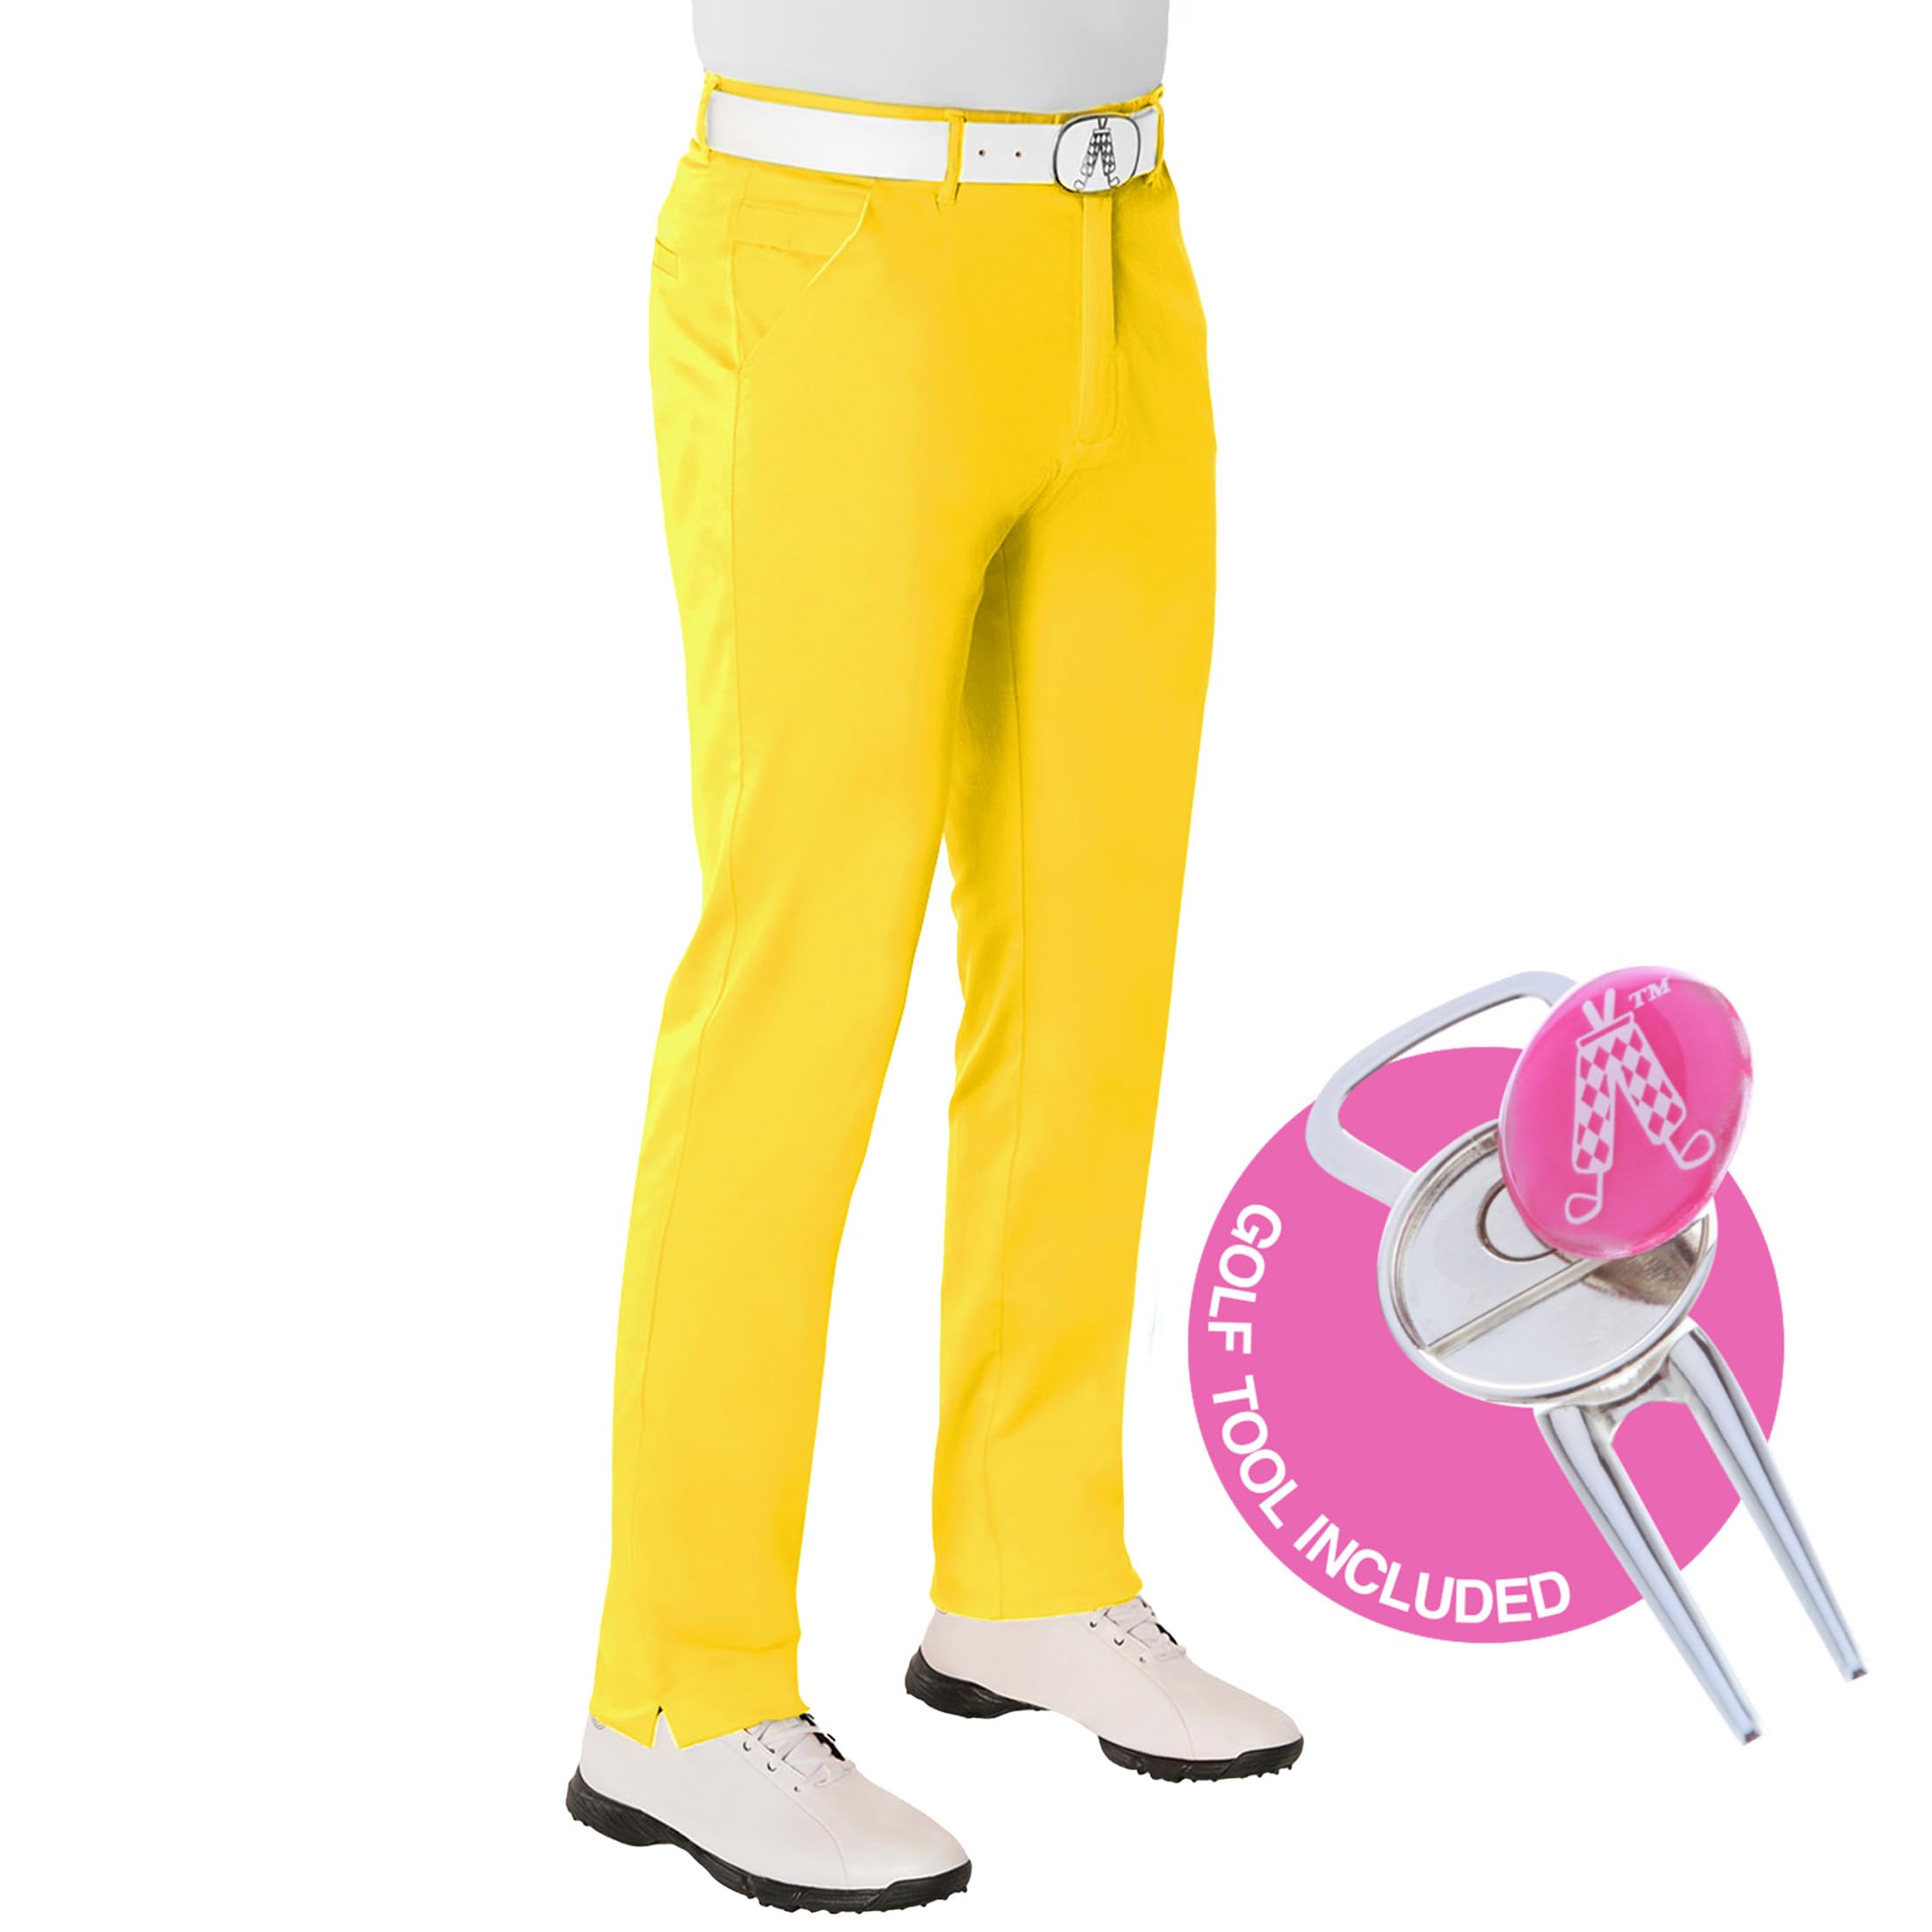 Royal & Awesome Yellow Golf Hosen für Männer, Herrengolfhosen, Funky Herrengolfhosen, Golfchinos für Männer